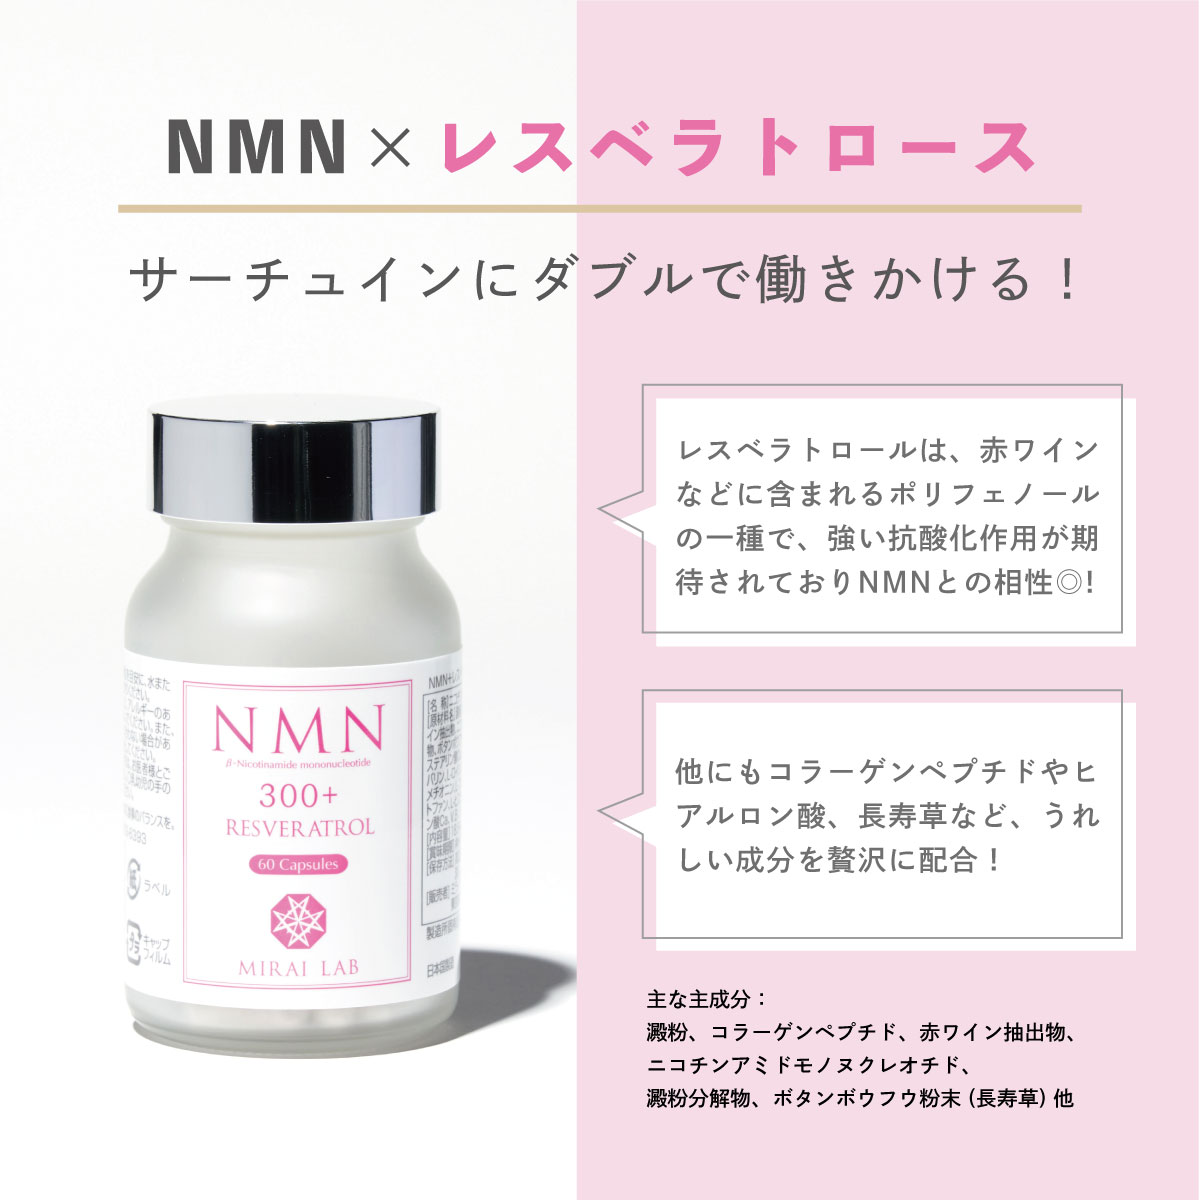 【公式】ミライラボ NMN+レスベラトロール プラス(60粒) 特許取得済 1ヶ月分 MIRAILAB 高純度99% 国内製造 高品質日本製  美容 サプリメント 送料無料 メーカー直送 ミライラボ